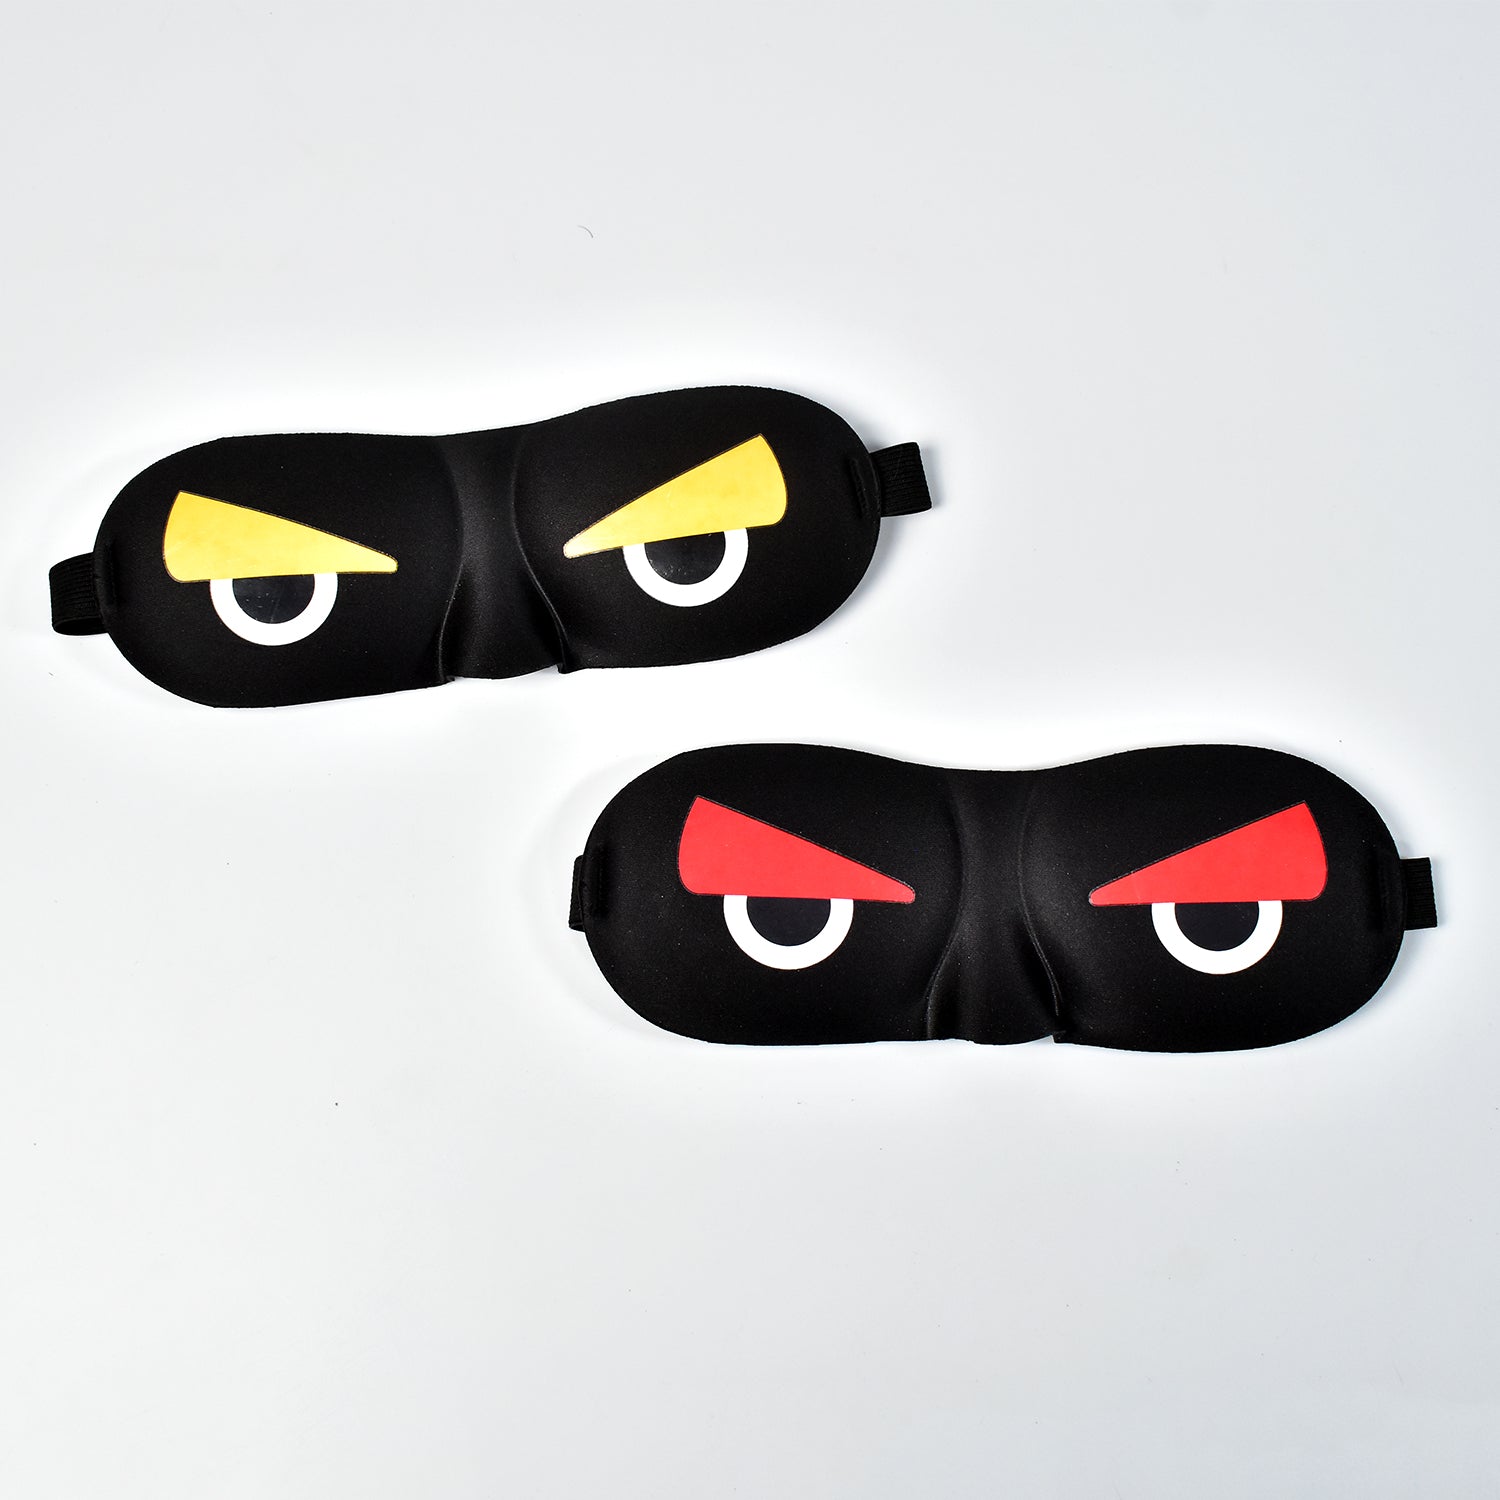 7817  Blind Sleeping Eye Mask Slip Night Sleep Eye black 3D Cotton Cover Super Soft & Smooth Travel Masks for Men Women Girls Boys Kids Dukandaily